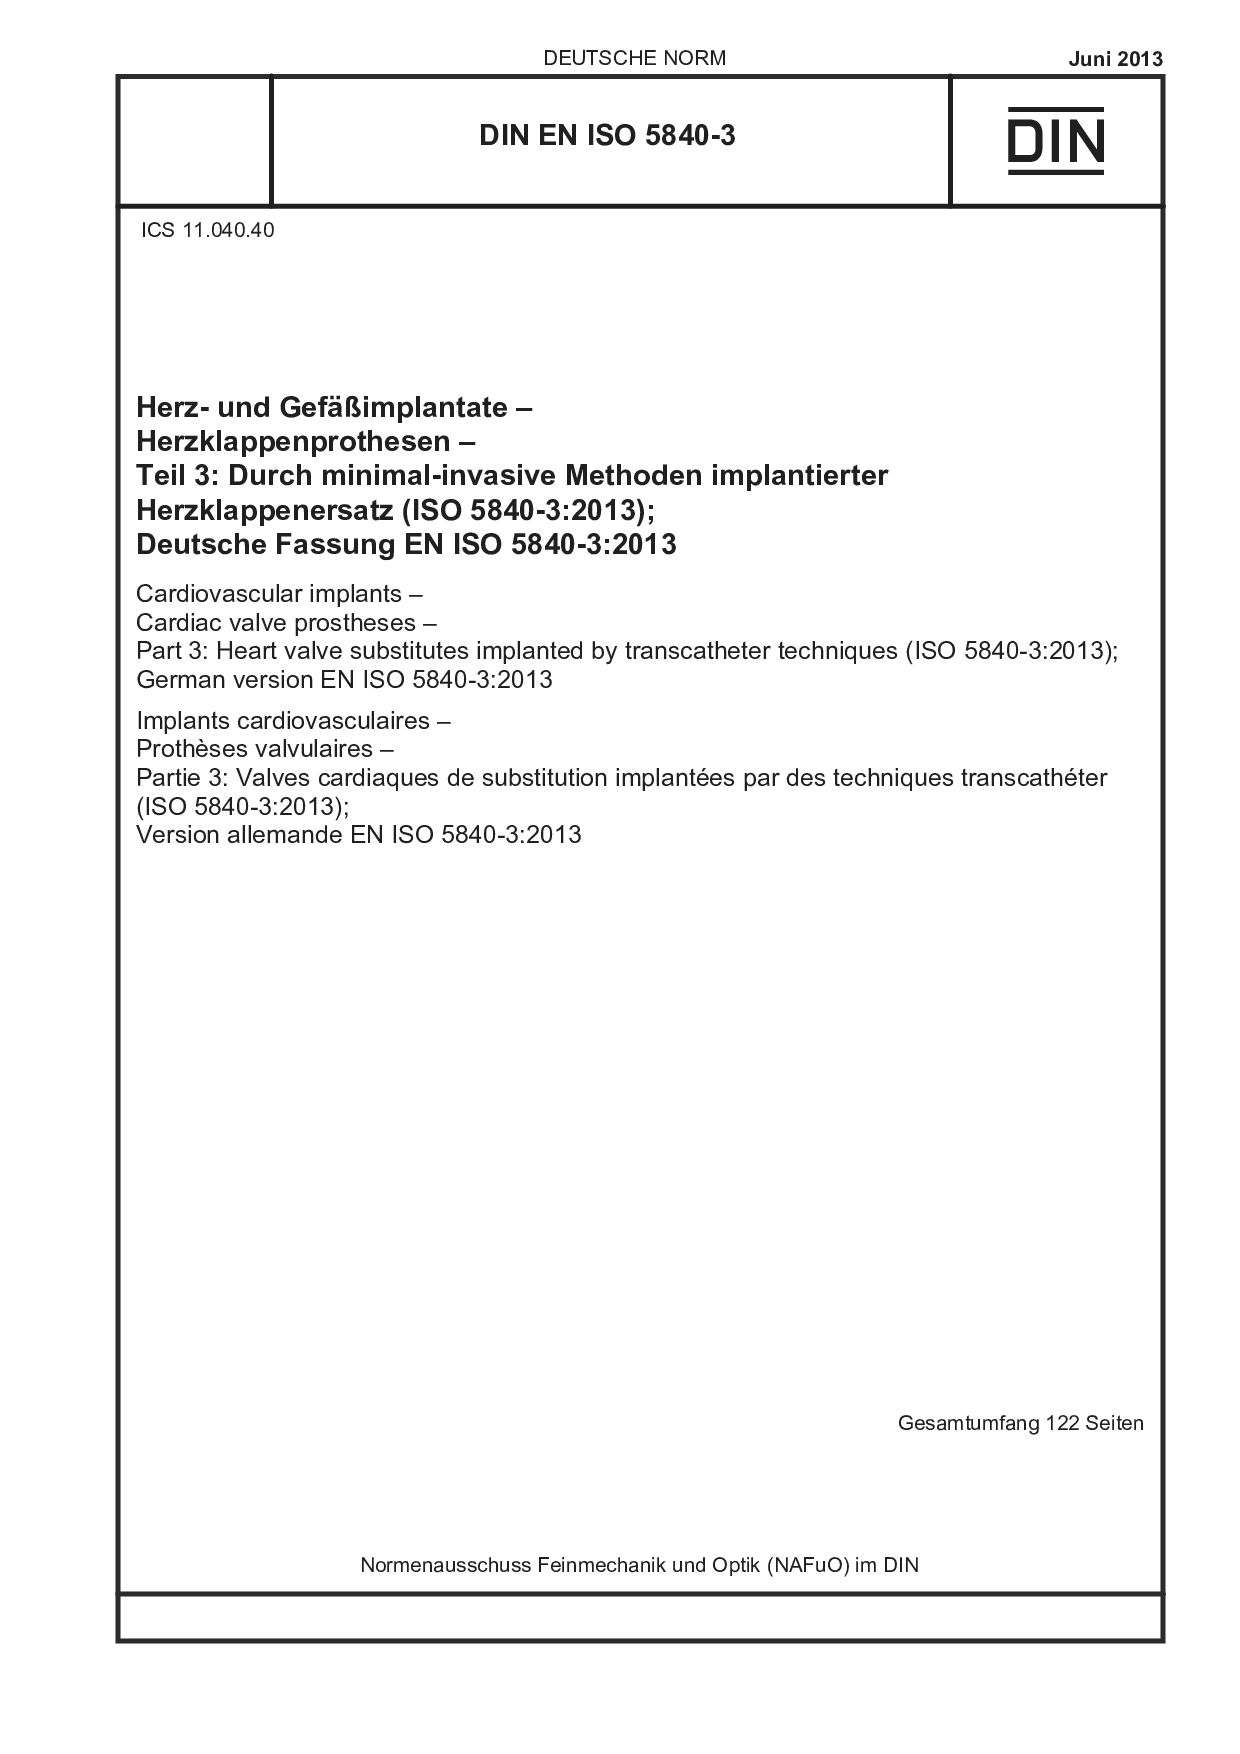 DIN EN ISO 5840-3:2013